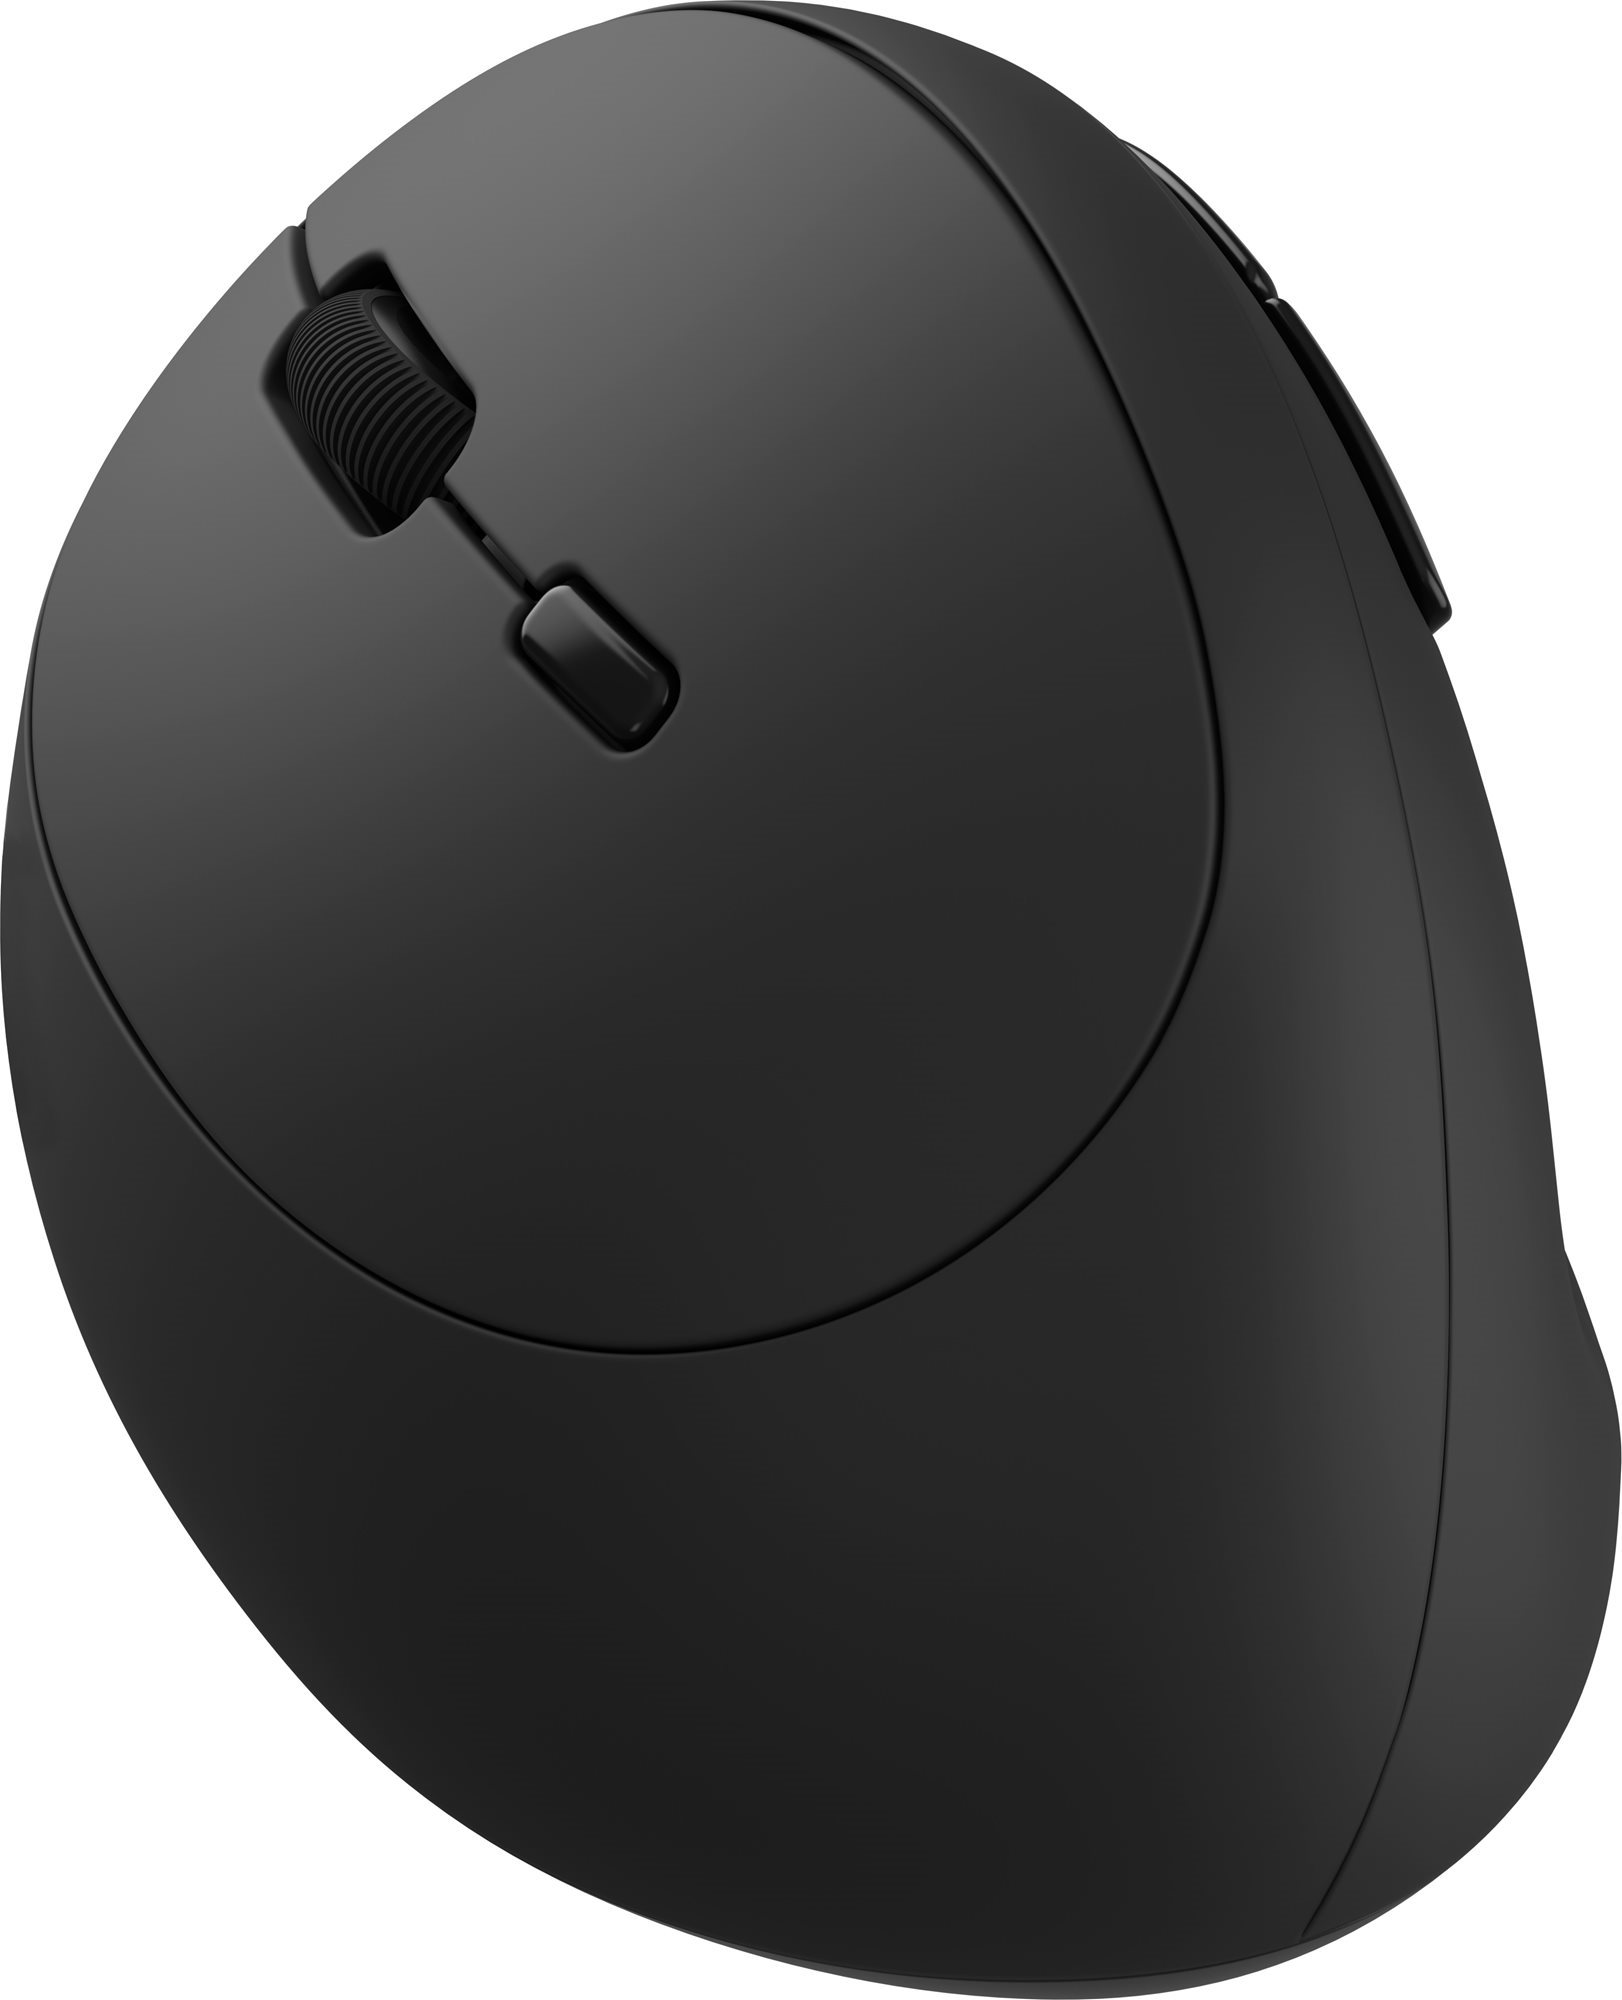 Eternico Office Vertical Mouse MS310 balkezesek számára